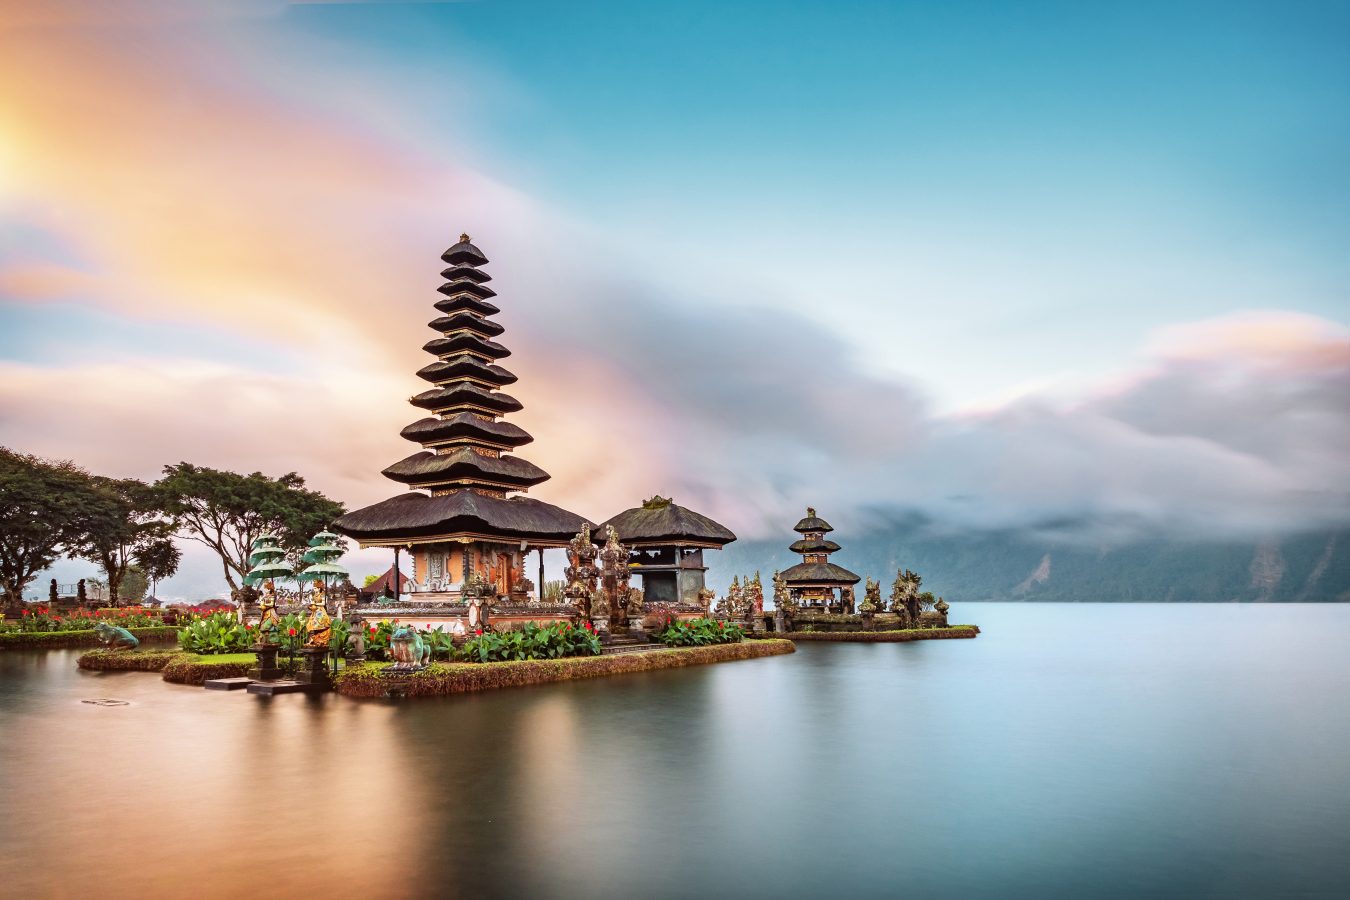 Ulun Danu Beratan Temple is a famous landmark located on the western side of the Beratan Lake, in Bali, Indonesia.